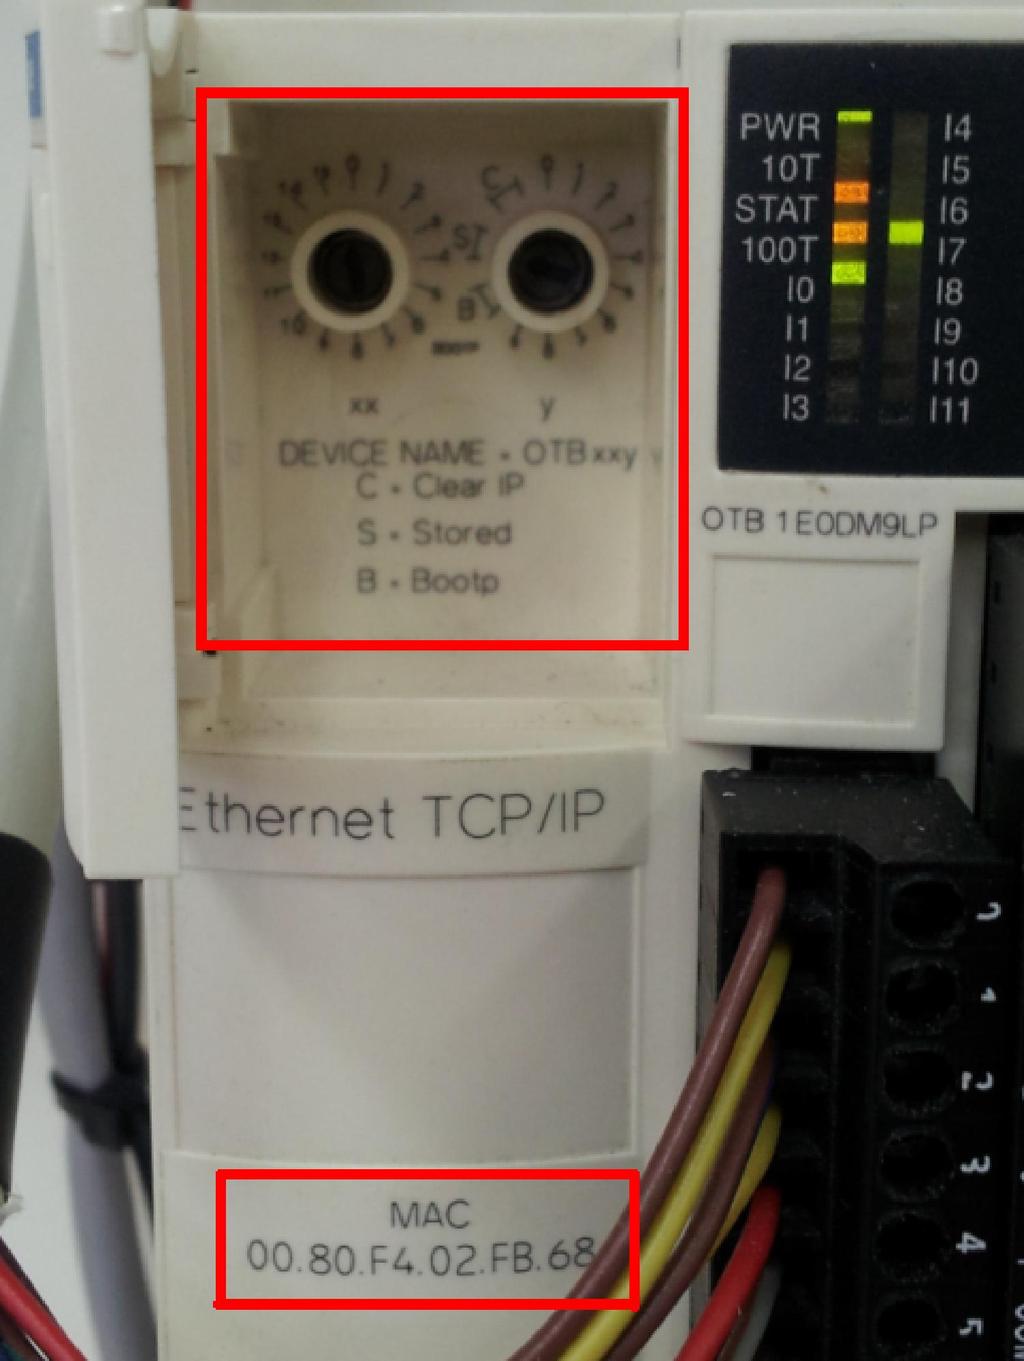 Configuración de IP de una OTB desde el Advantys configurator.